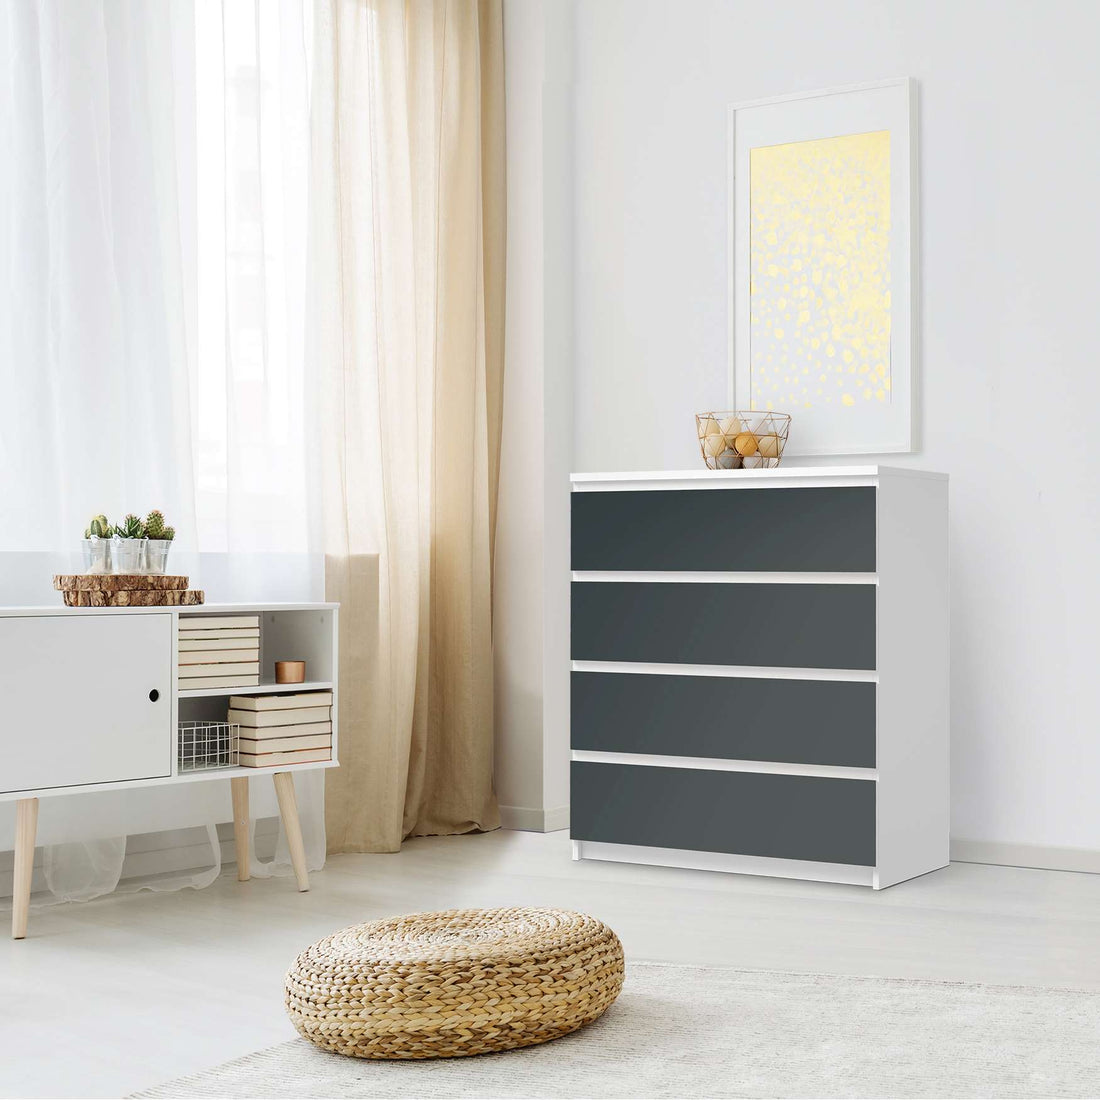 Folie für Möbel Blaugrau Dark - IKEA Malm Kommode 4 Schubladen - Schlafzimmer